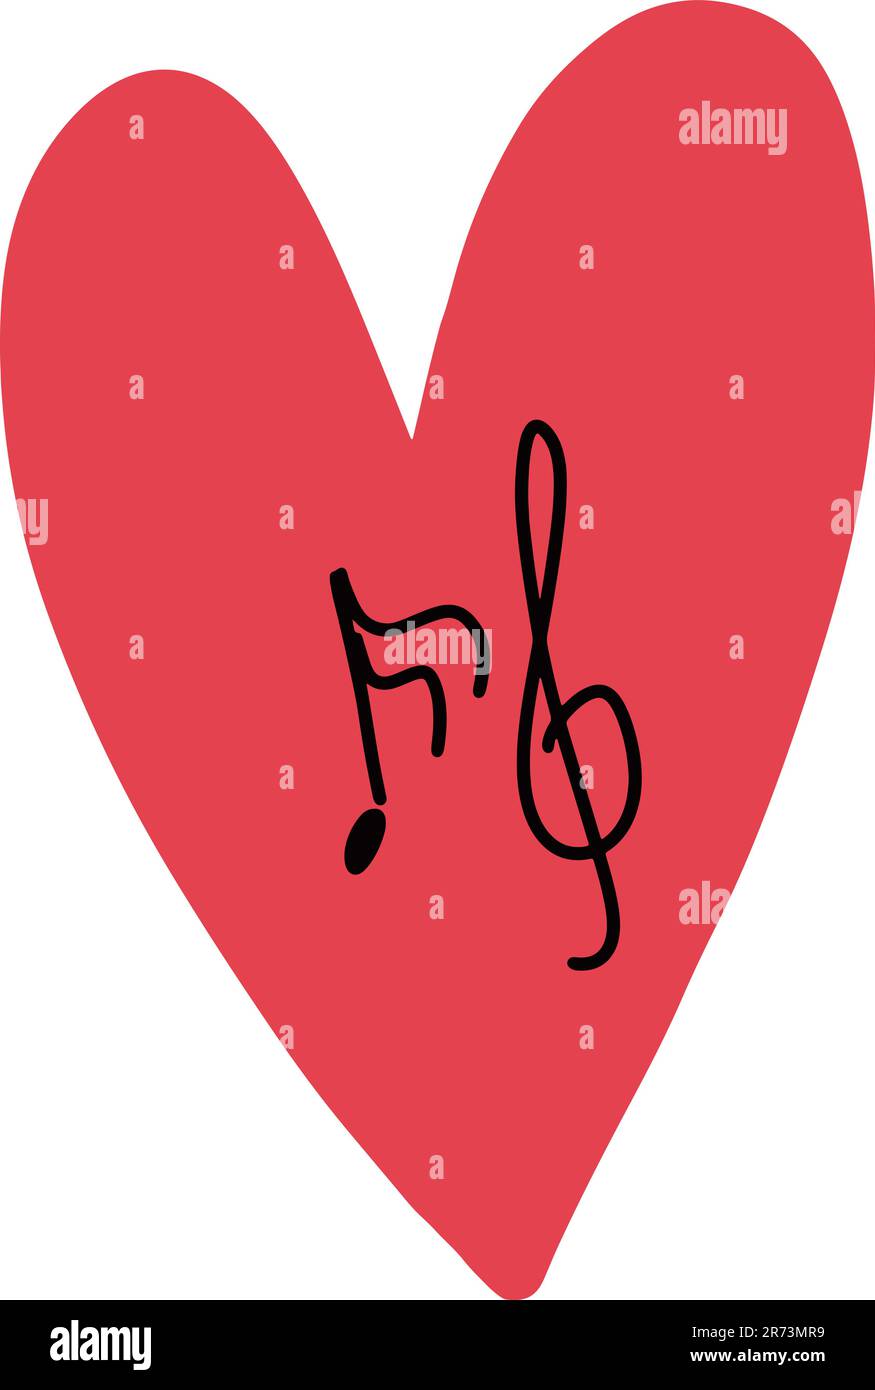 Simbolo del cuore con note e spacco degli alti all'interno Illustrazione Vettoriale